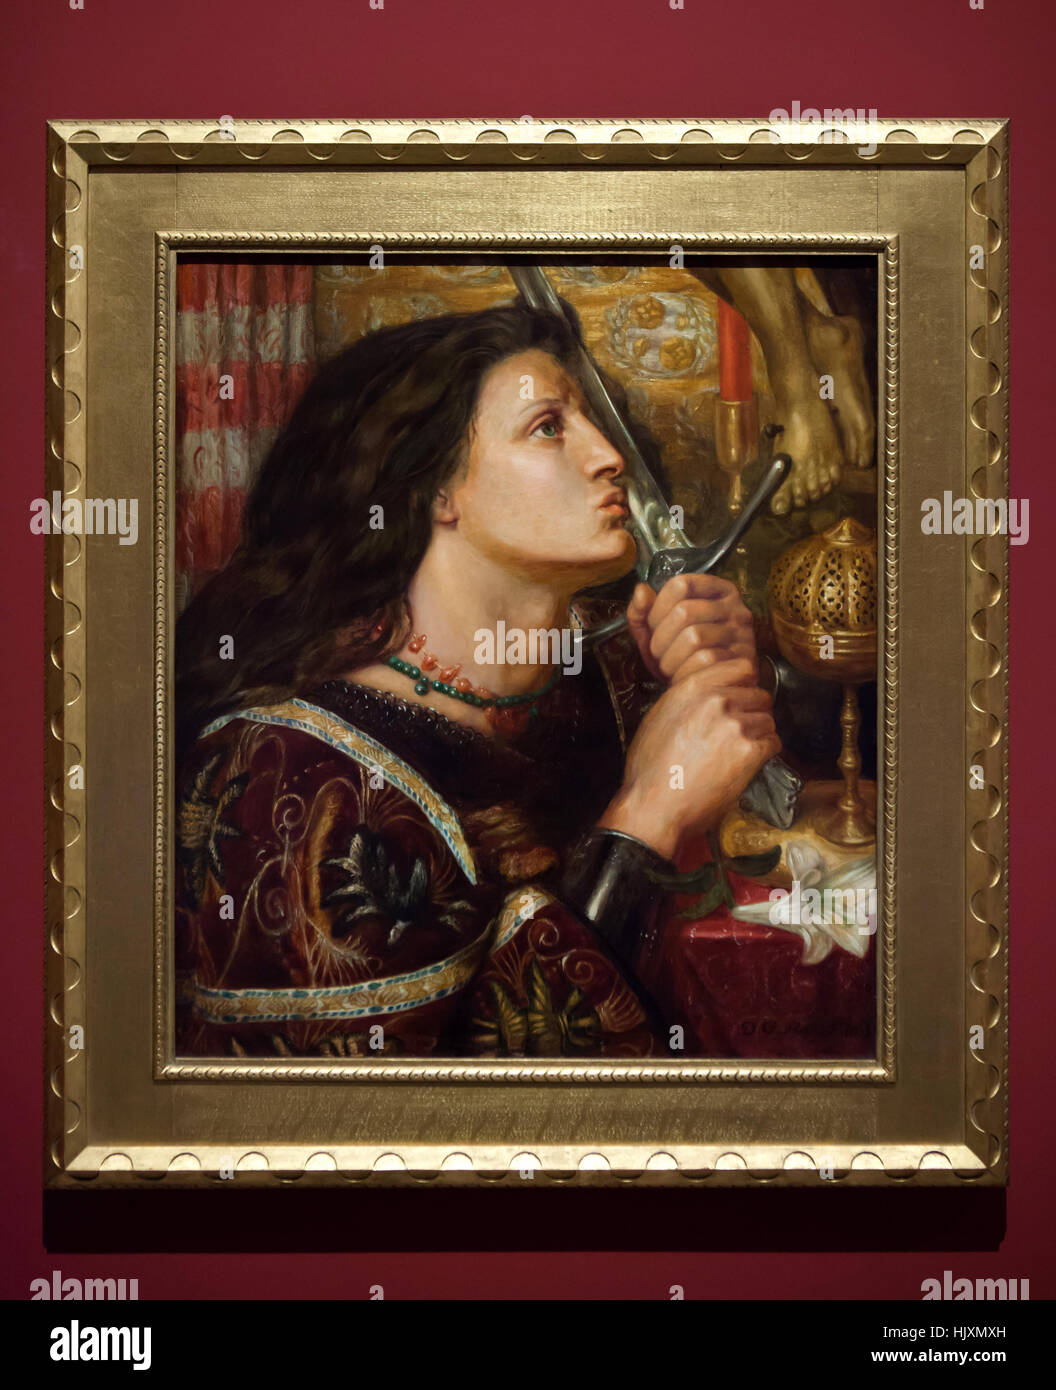 La pittura di Joan Of Arc baciare la spada di Liberazione (1863) dalla lingua inglese Pre-Raphaelite pittore Dante Gabriel Rossetti sul display al Musee des Beaux-Arts de Strasbourg (Museo delle Belle Arti) a Strasburgo, Alsazia, Francia. Foto Stock